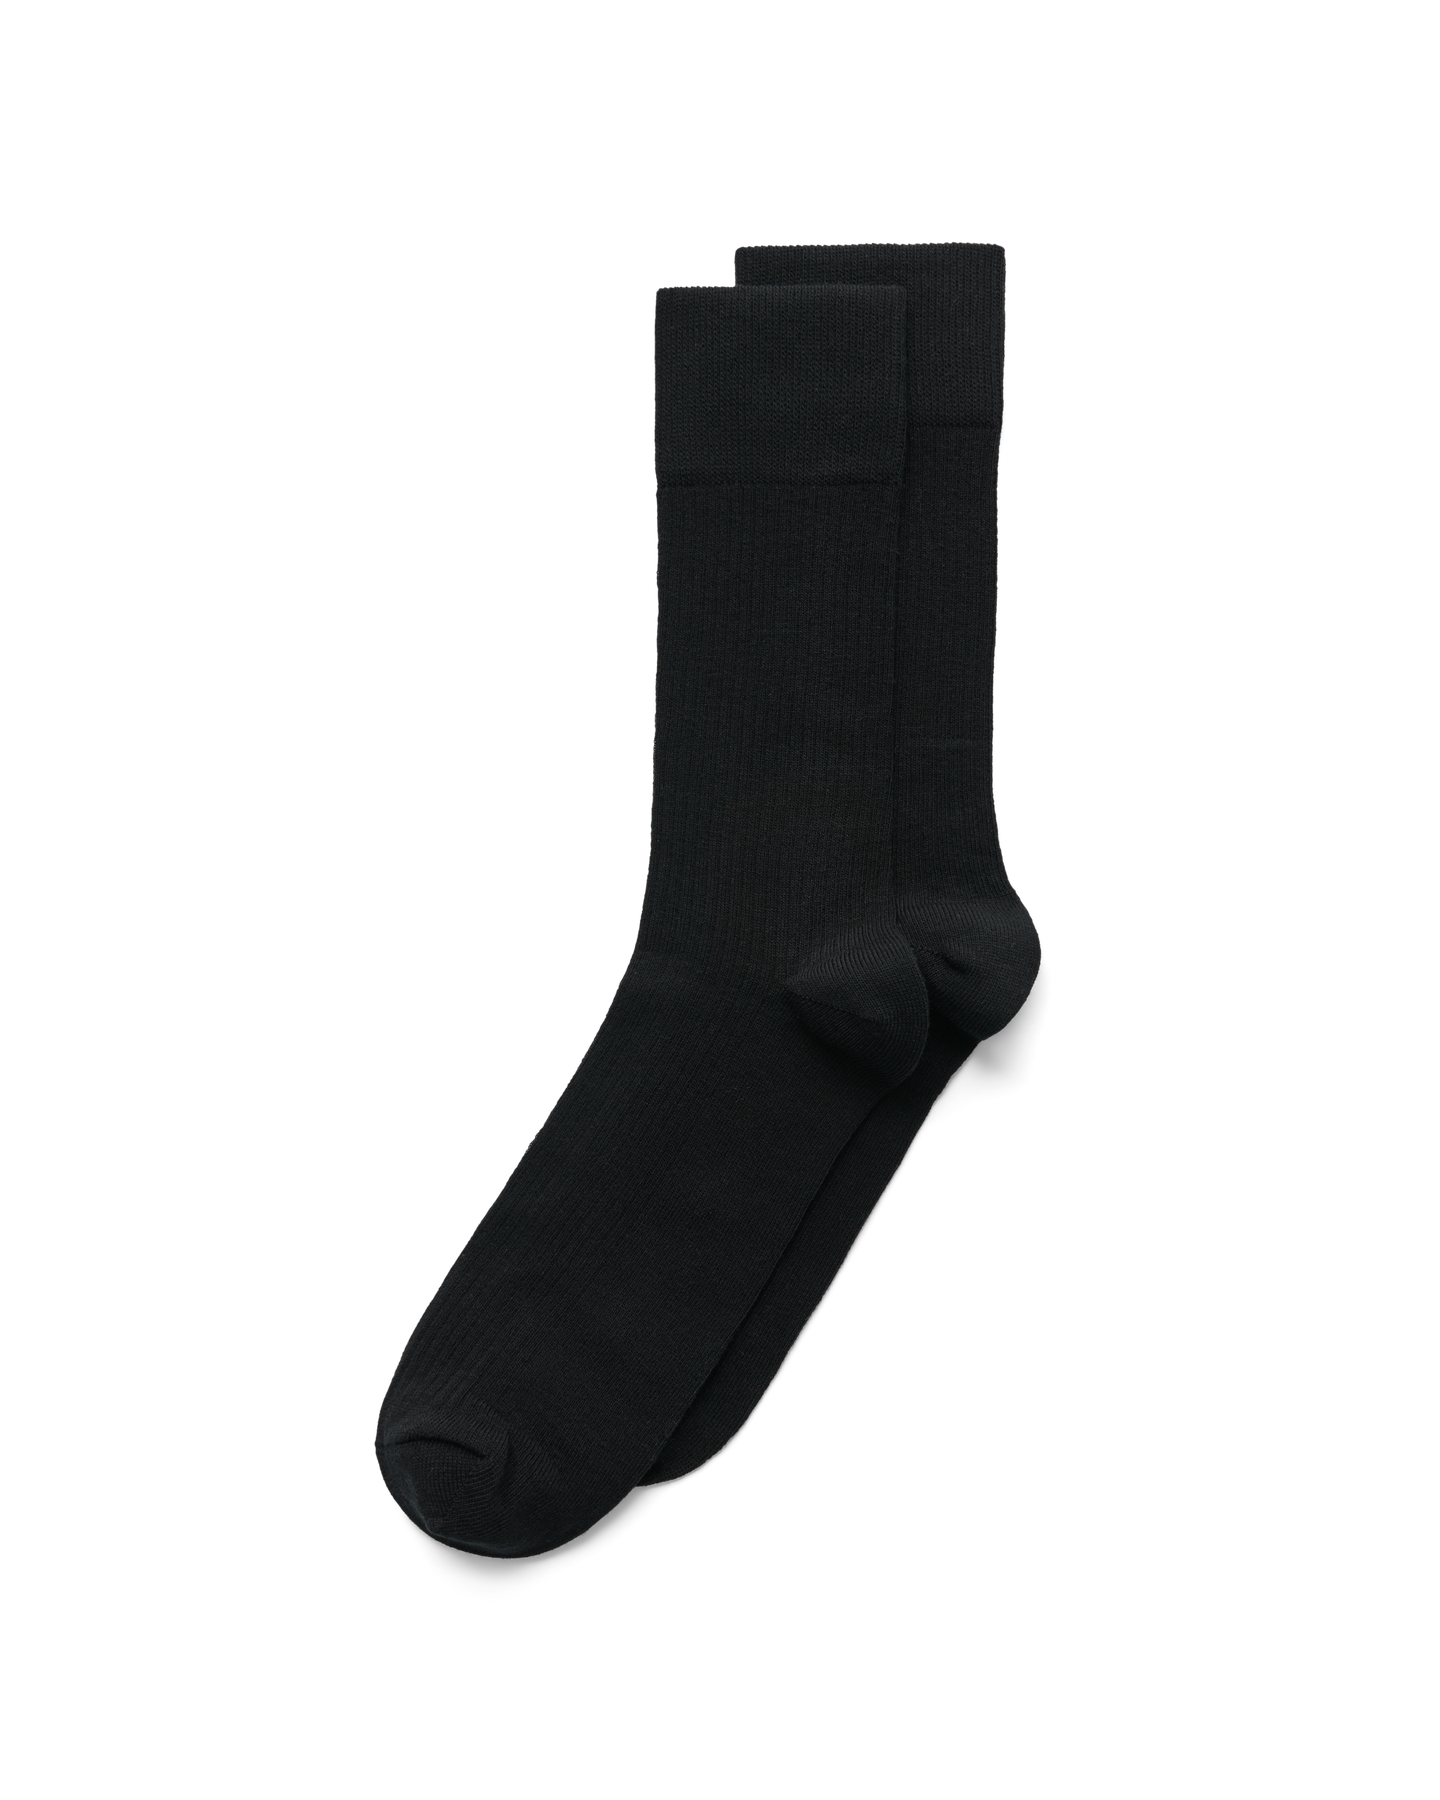 ECCO Men's Classic Ribbed Mid Cut Socks Adult Black